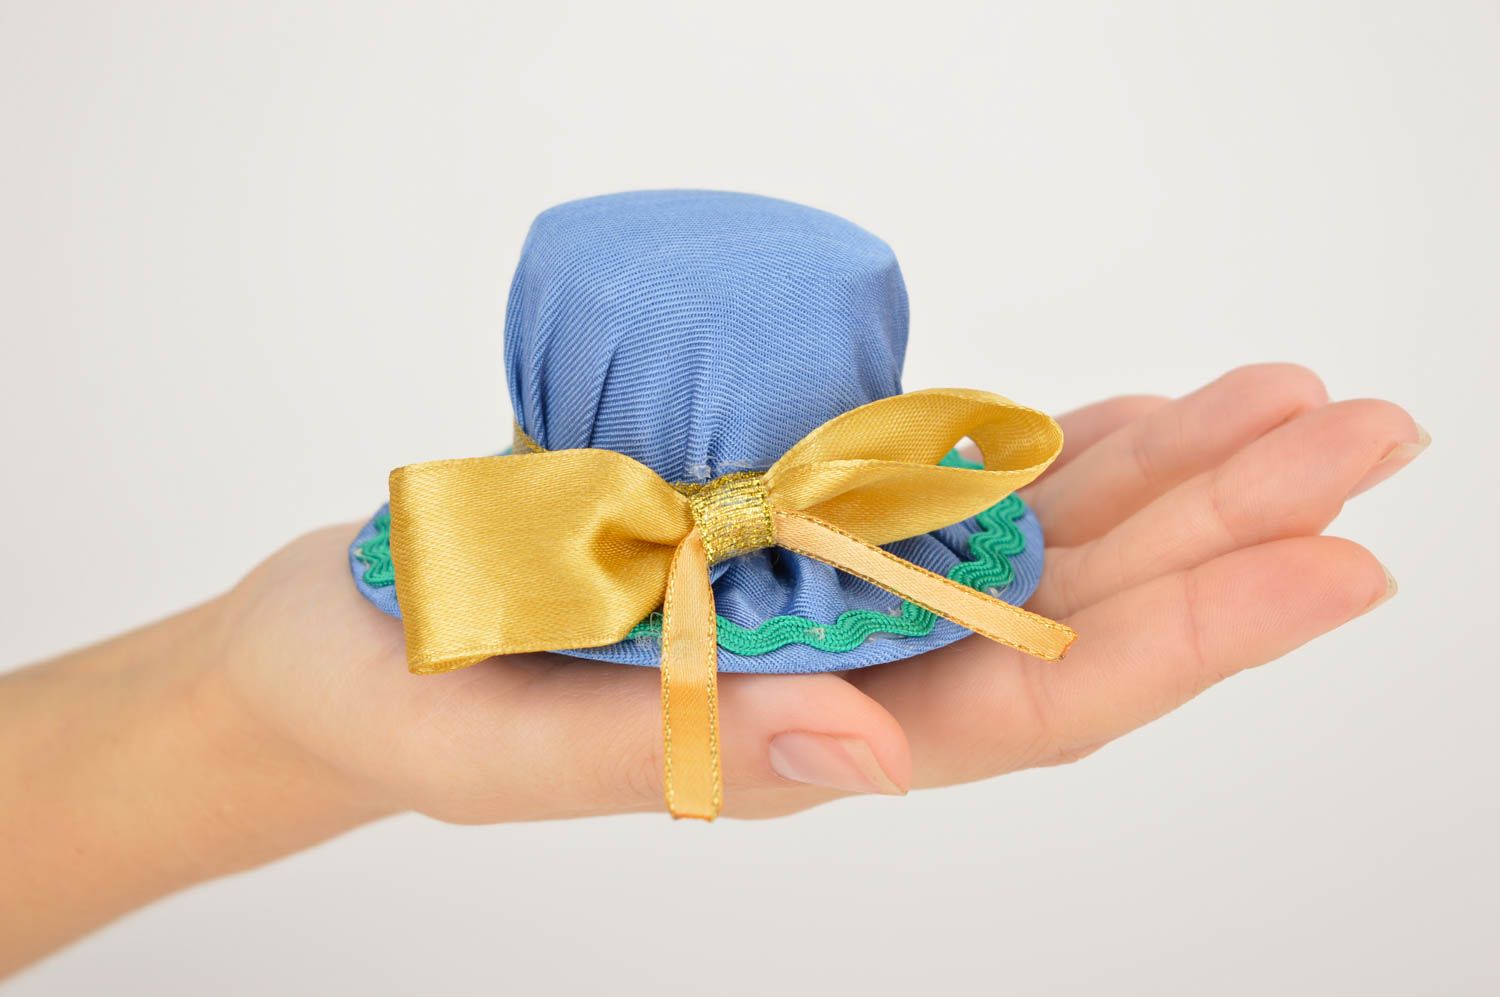 Аксессуар для шитья ручной работы подушечка для иголок подарок для девушки фото 1